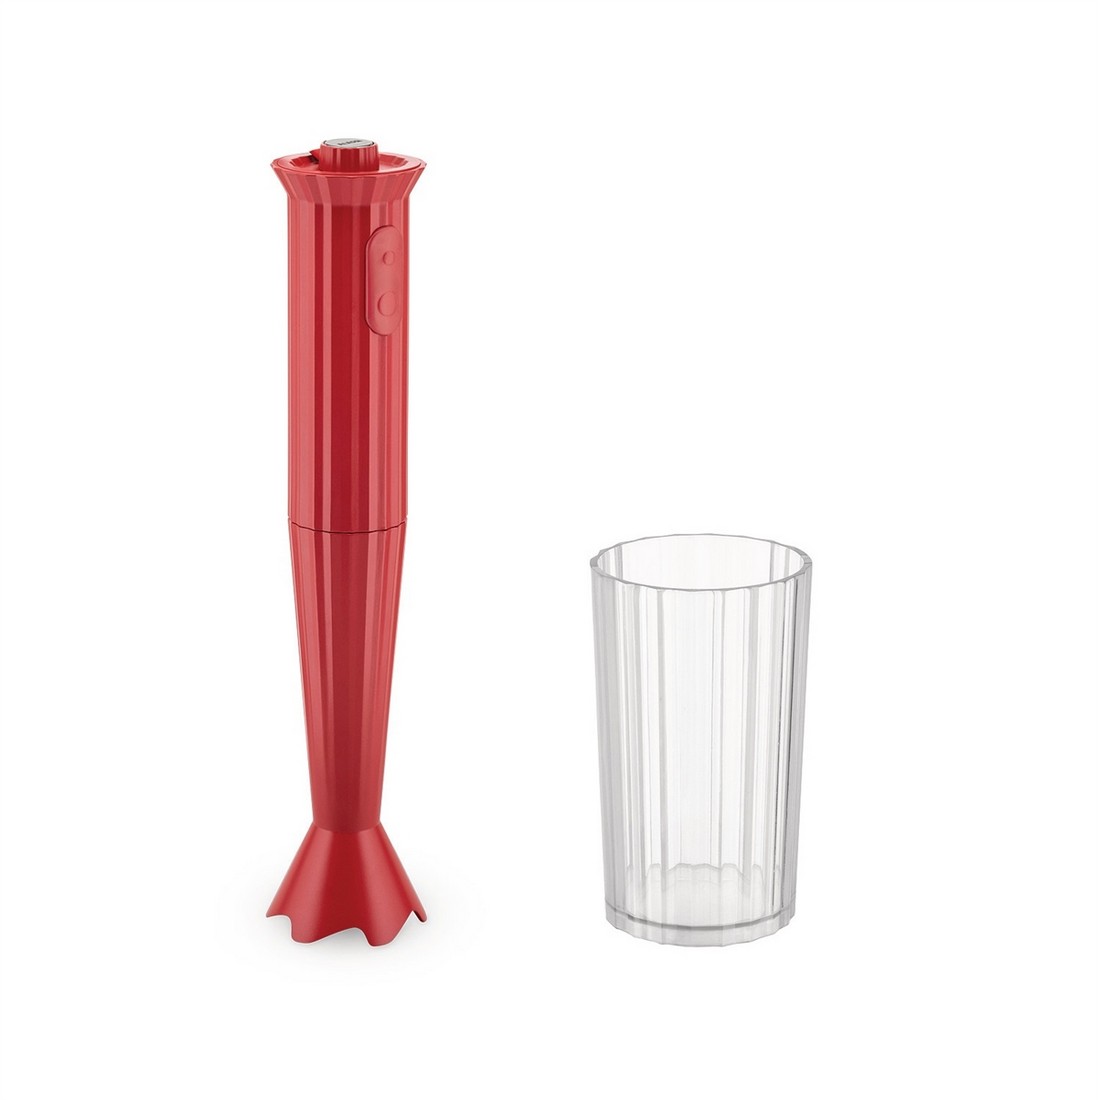 Alessi - Plissè - Minipimer in resina termoplastica con bicchiere graduato - 500 W - Rosso